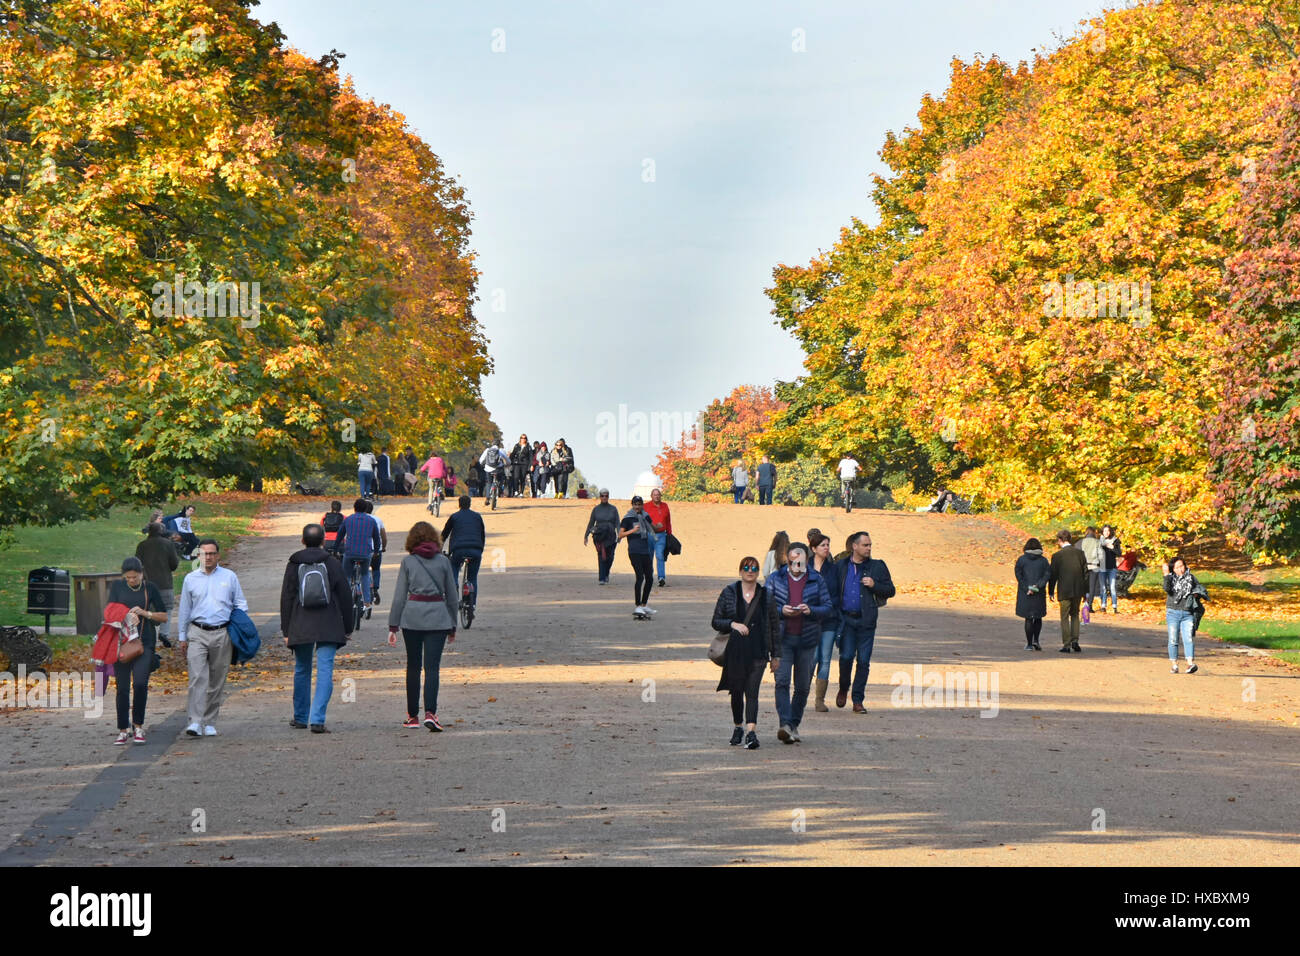 London park l'automne dans les jardins de Kensington la large marche flanquée par les arbres d'automne Londres Angleterre Royaume-uni londoniens et touristes marcher au soleil Banque D'Images